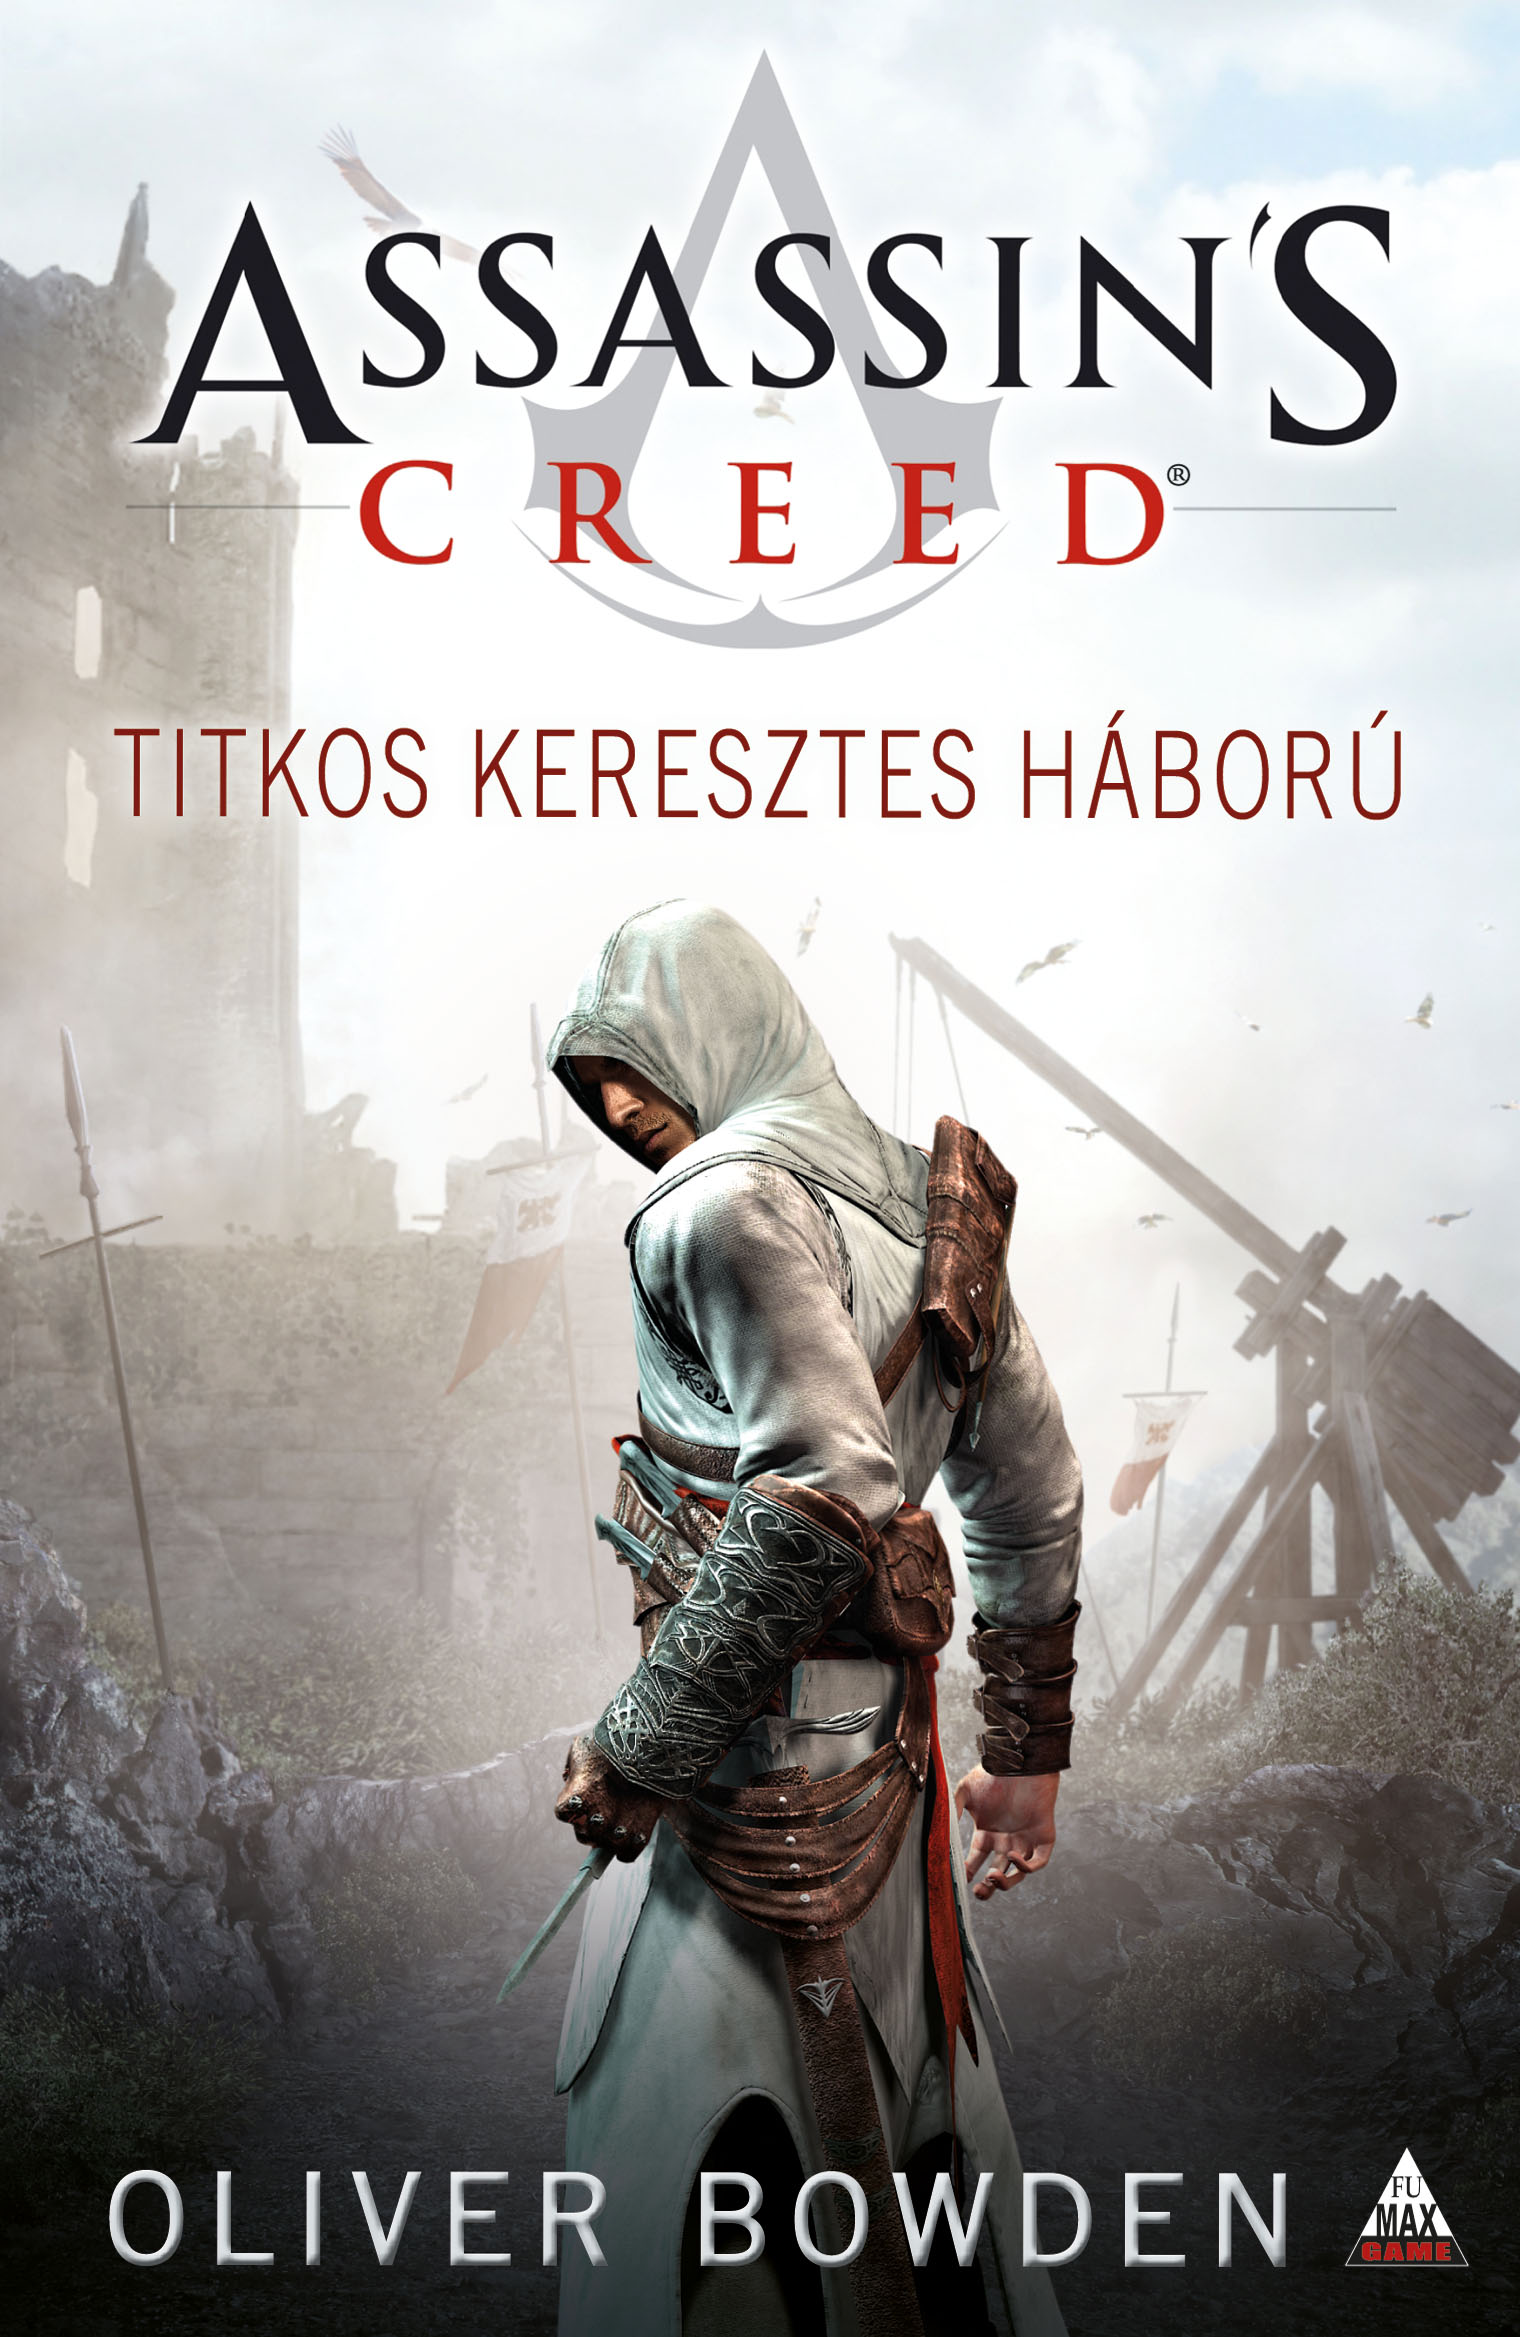 Assassin"s Creed: Titkos keresztes háború